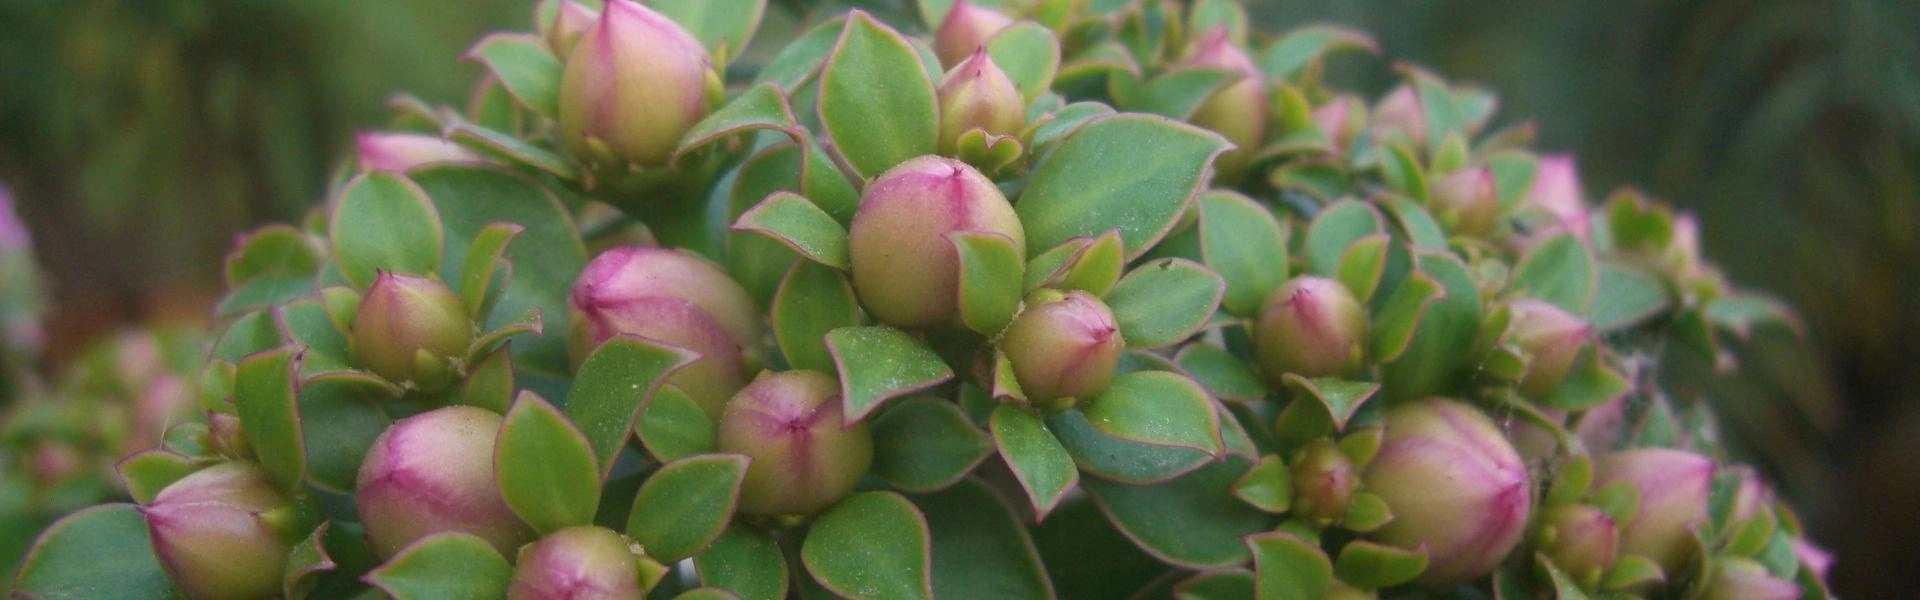 Flor da Ora-pro-nóbis, uma planta alimentícia não convencional.